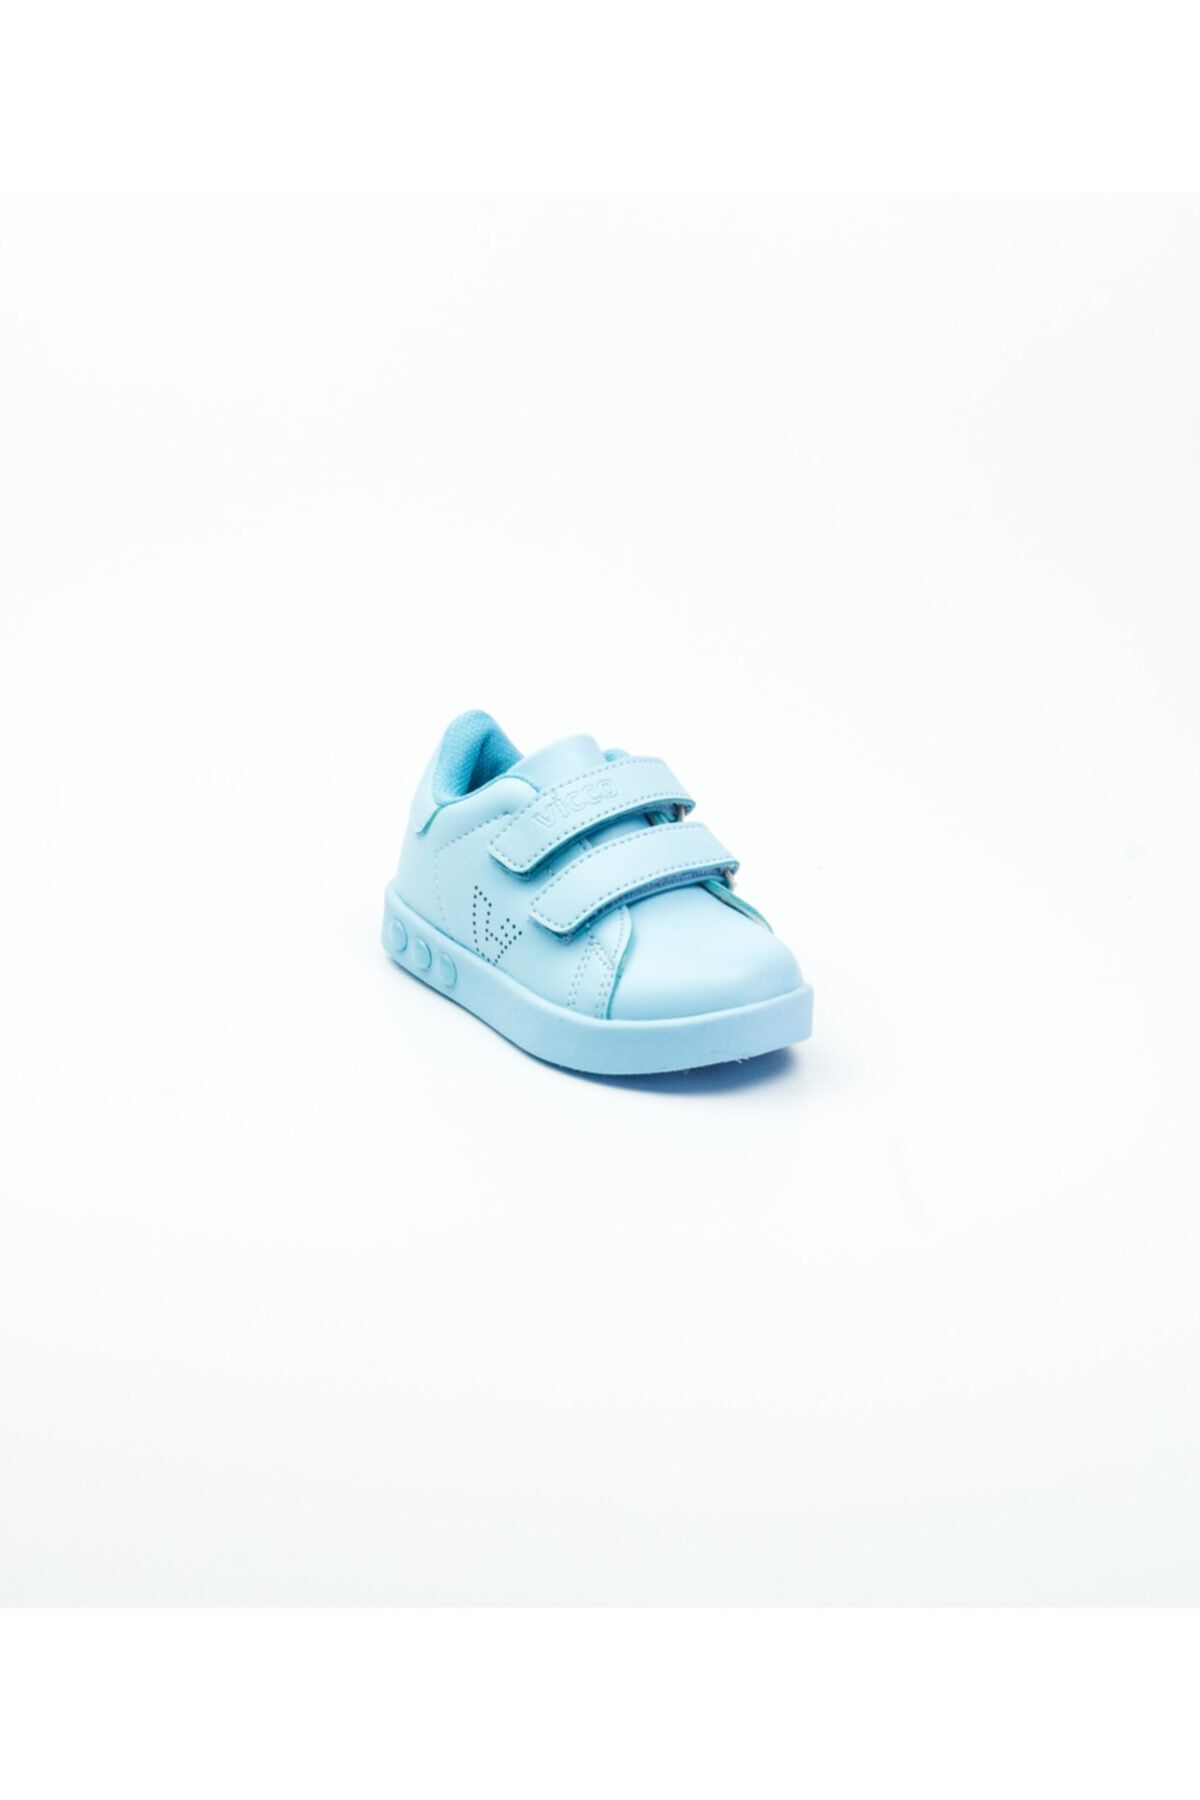 Vicco 313.b19k.100 Mavi Işıklı Bebek Spor Ayakkabı Mavi-19